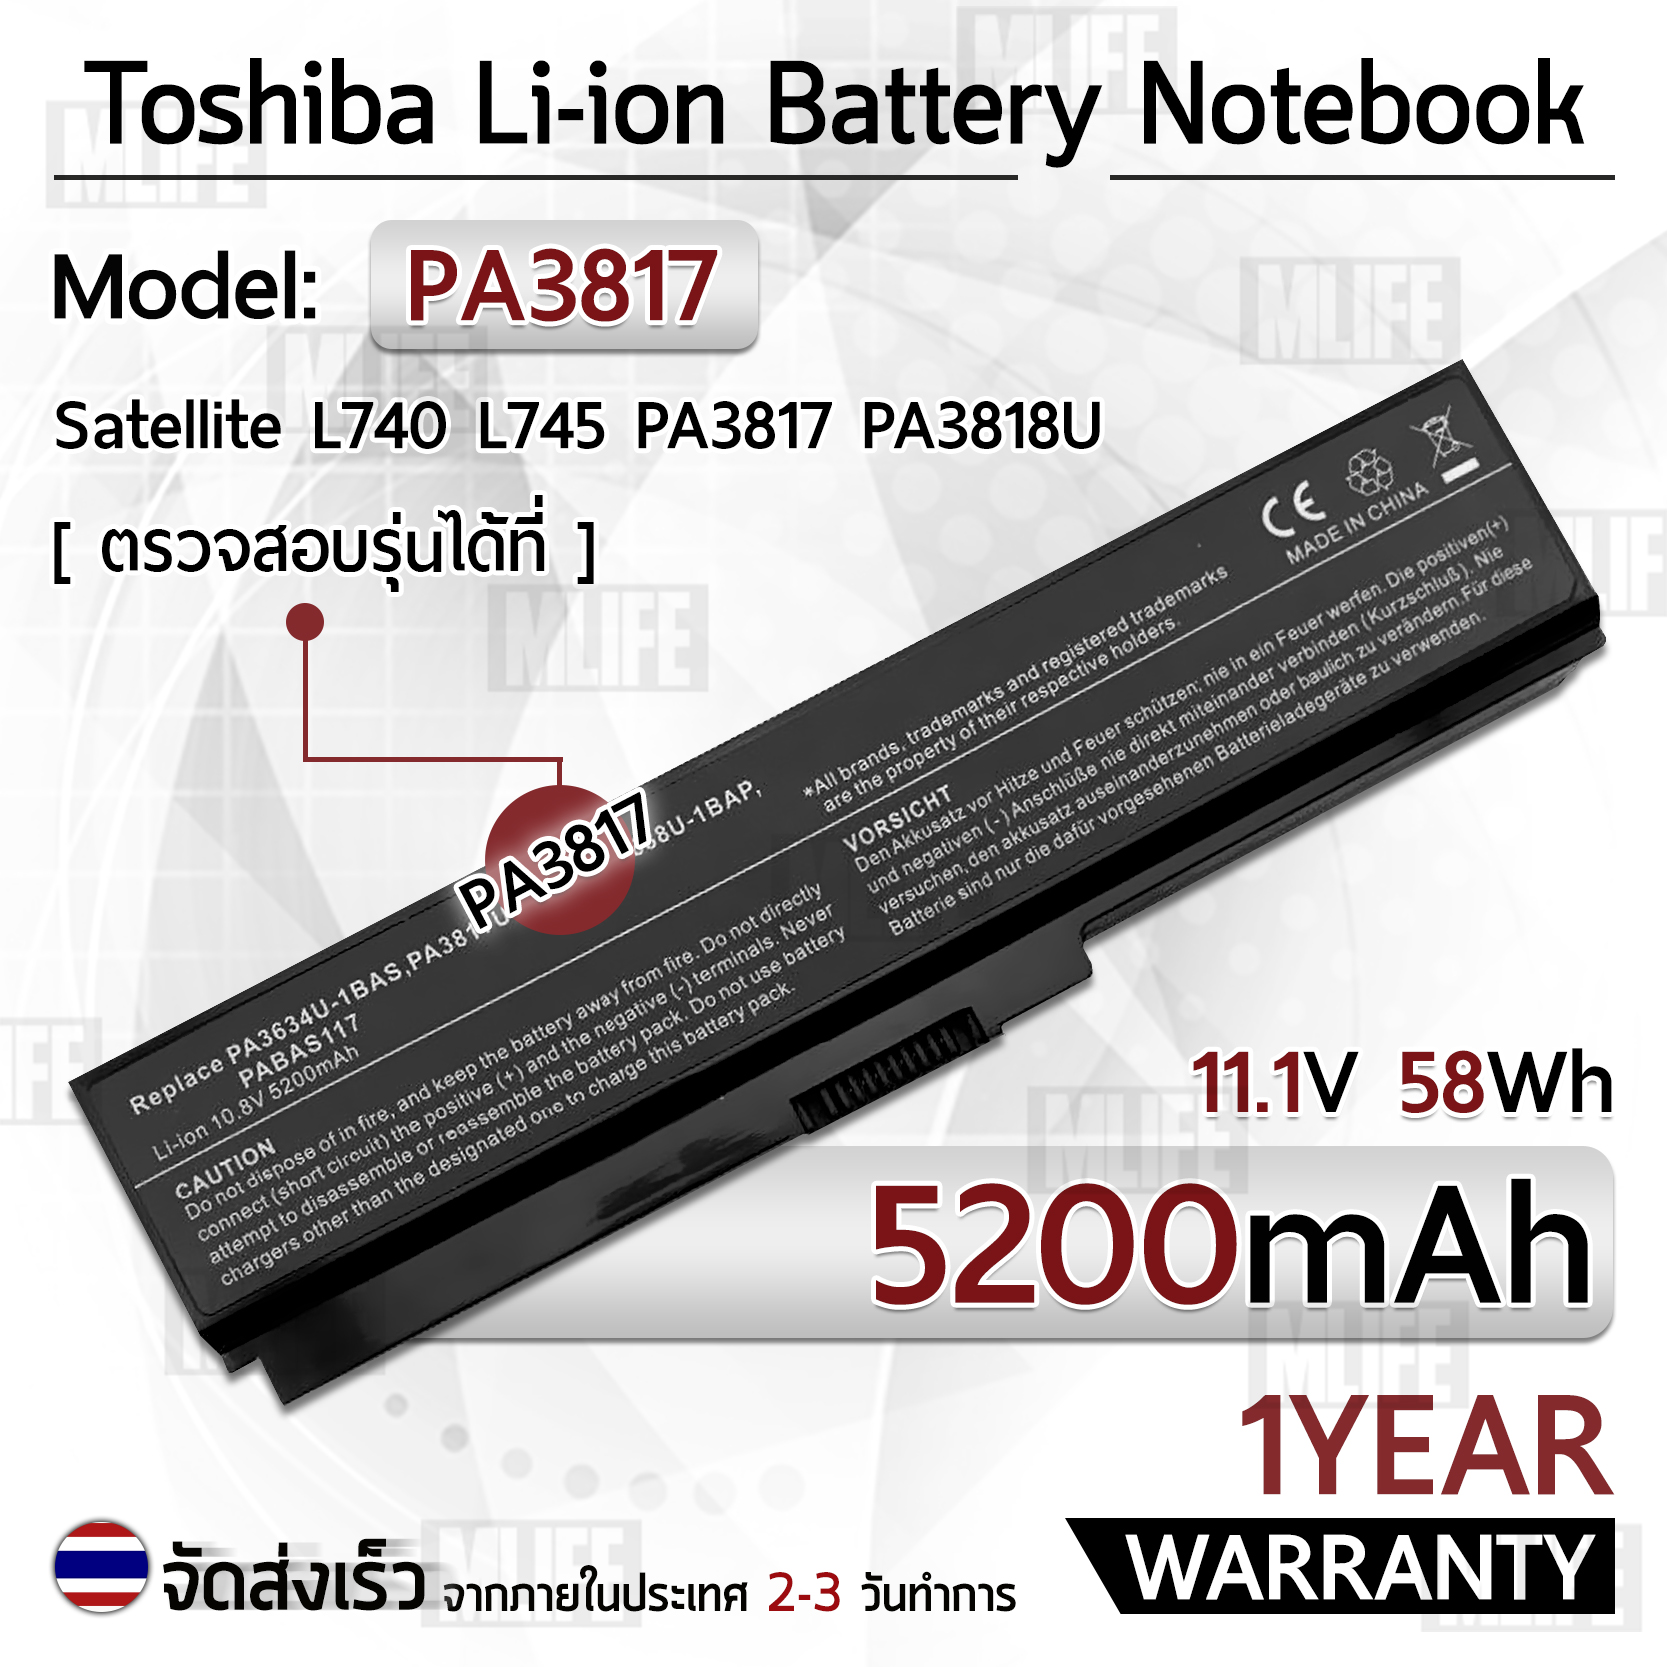 MLIFE - รับประกัน 1 ปี - แบตเตอรี่ โน้ตบุ๊ค แล็ปท็อป TOSHIBA PA3817 PA3817U PA3818U PA3819U PABAS228 5200mAh สำหรับ L745 L740 L755 L675 L750 L700 P750 P755 A665 C655 C655D L755D P775 C675 Battery Notebook Lapto